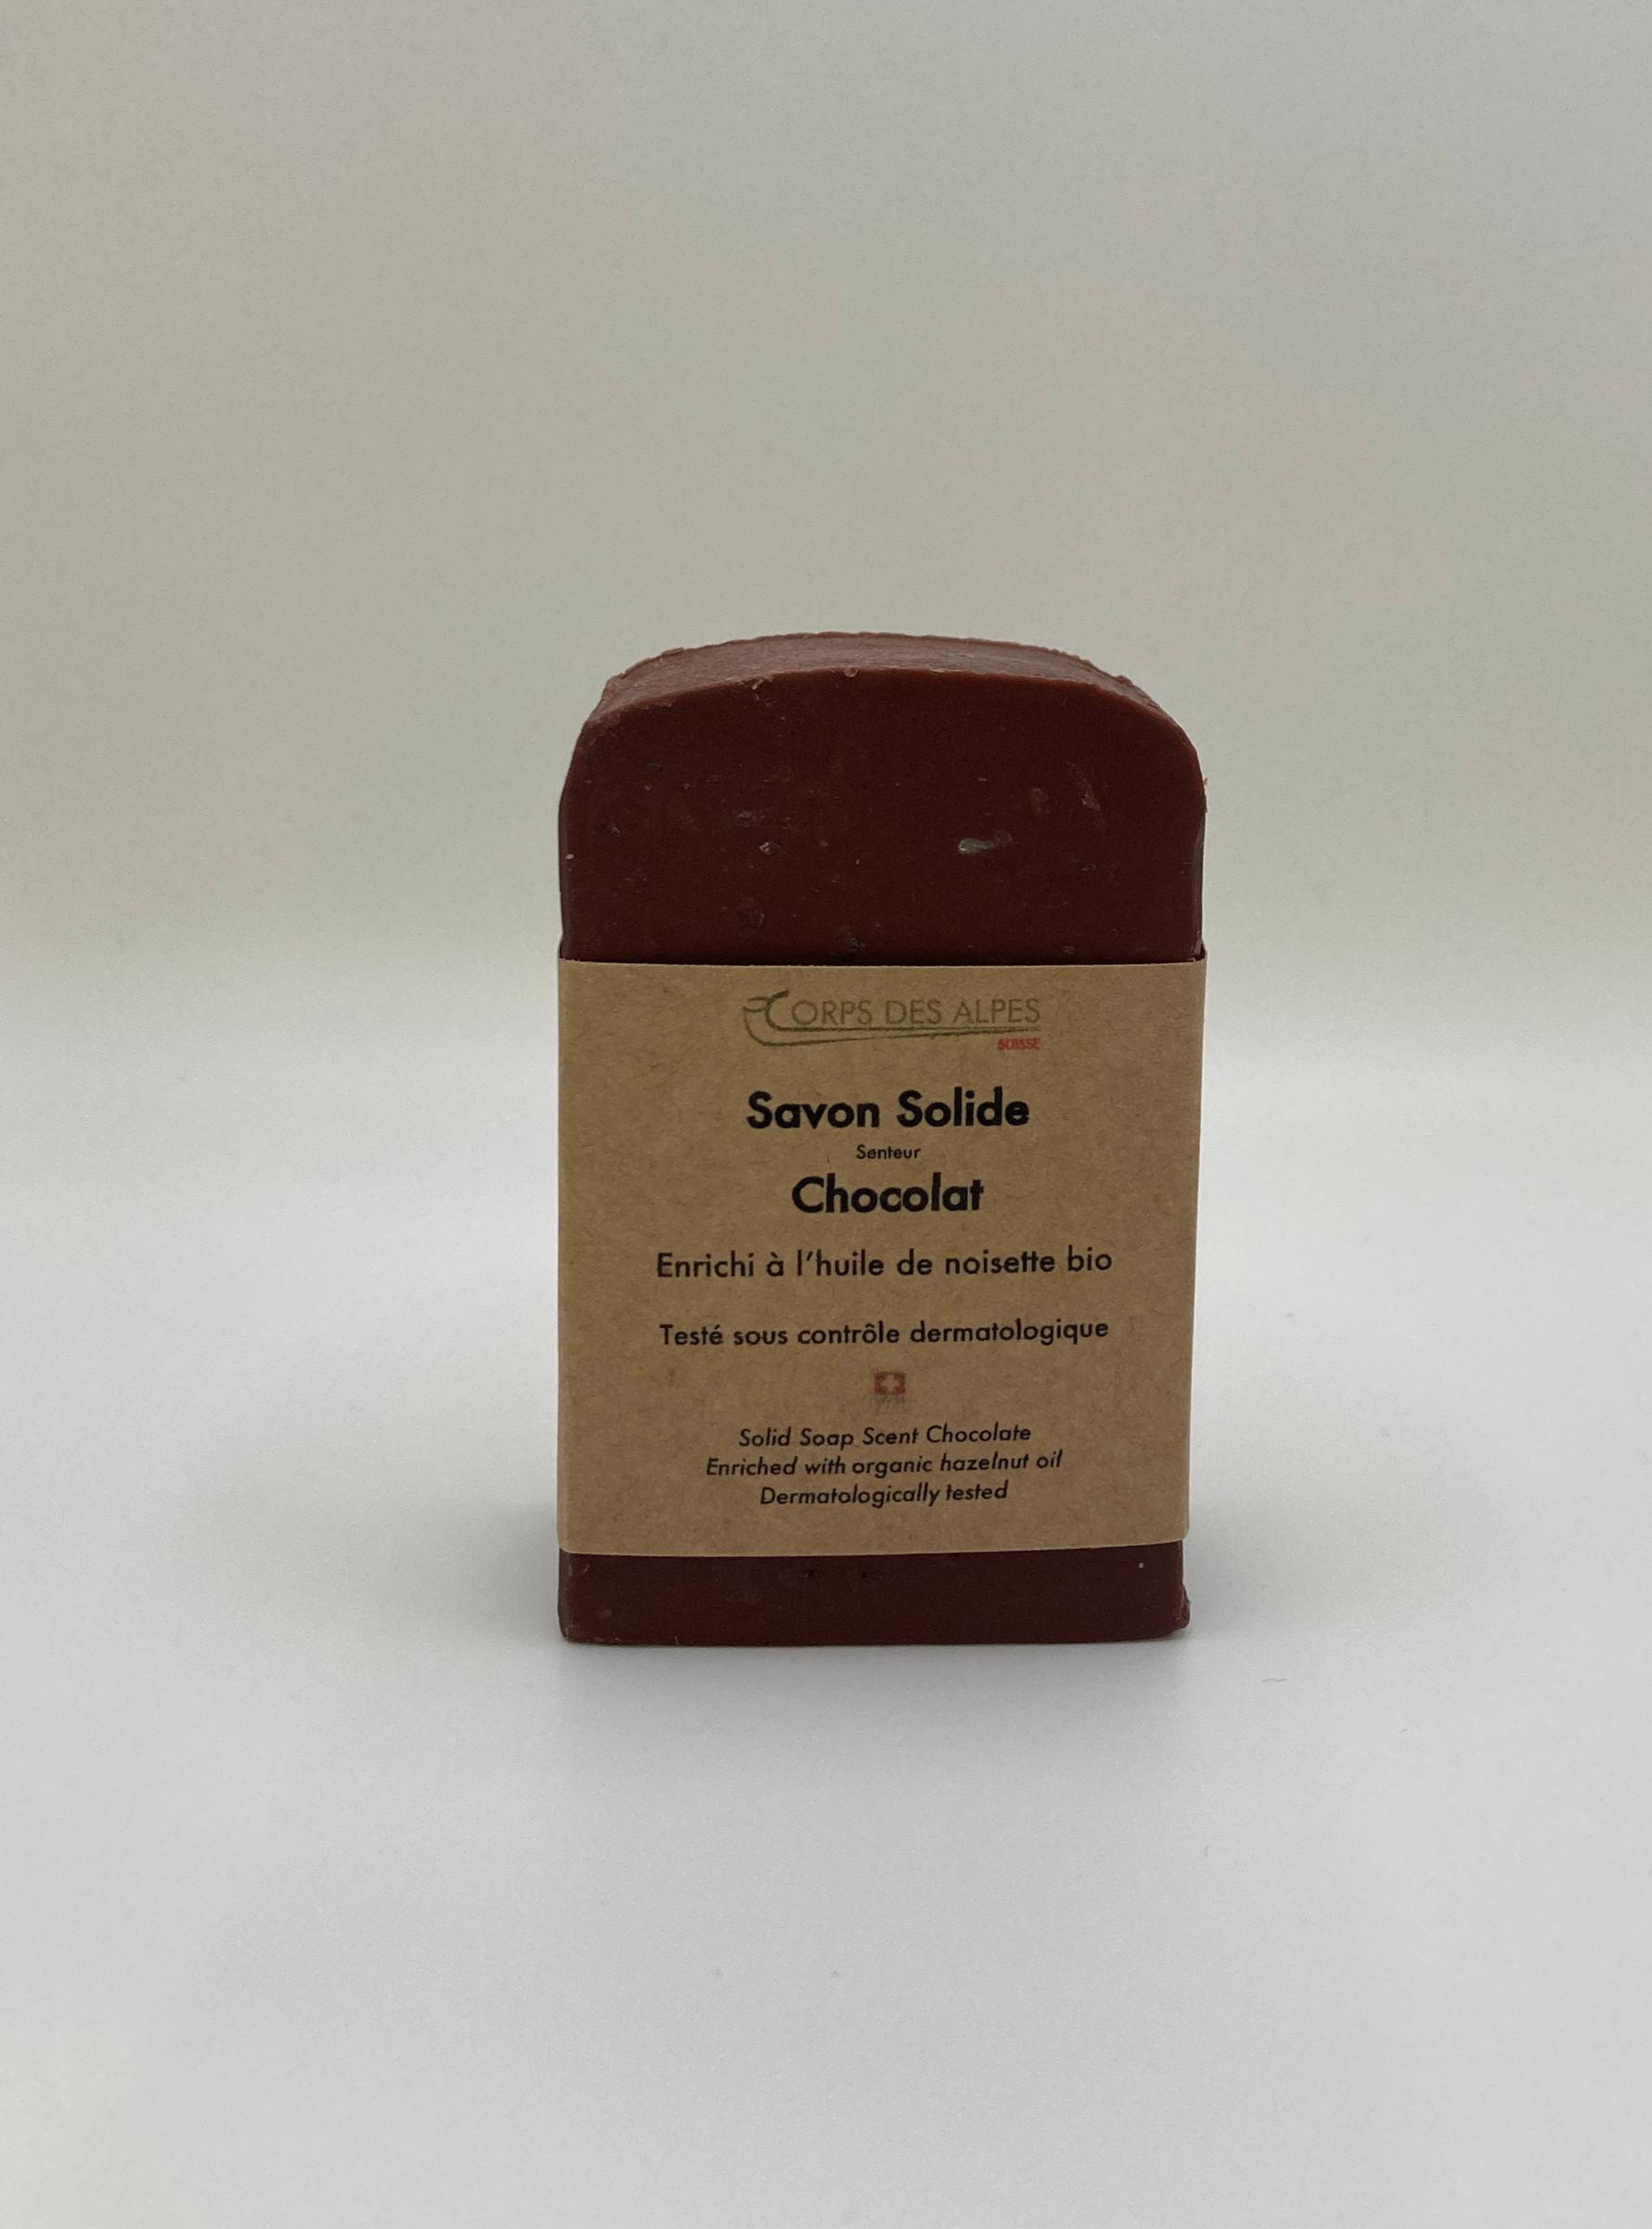 Savon Solide senteur Chocolat, prodotto artigianale per la vendita diretta in Svizzera